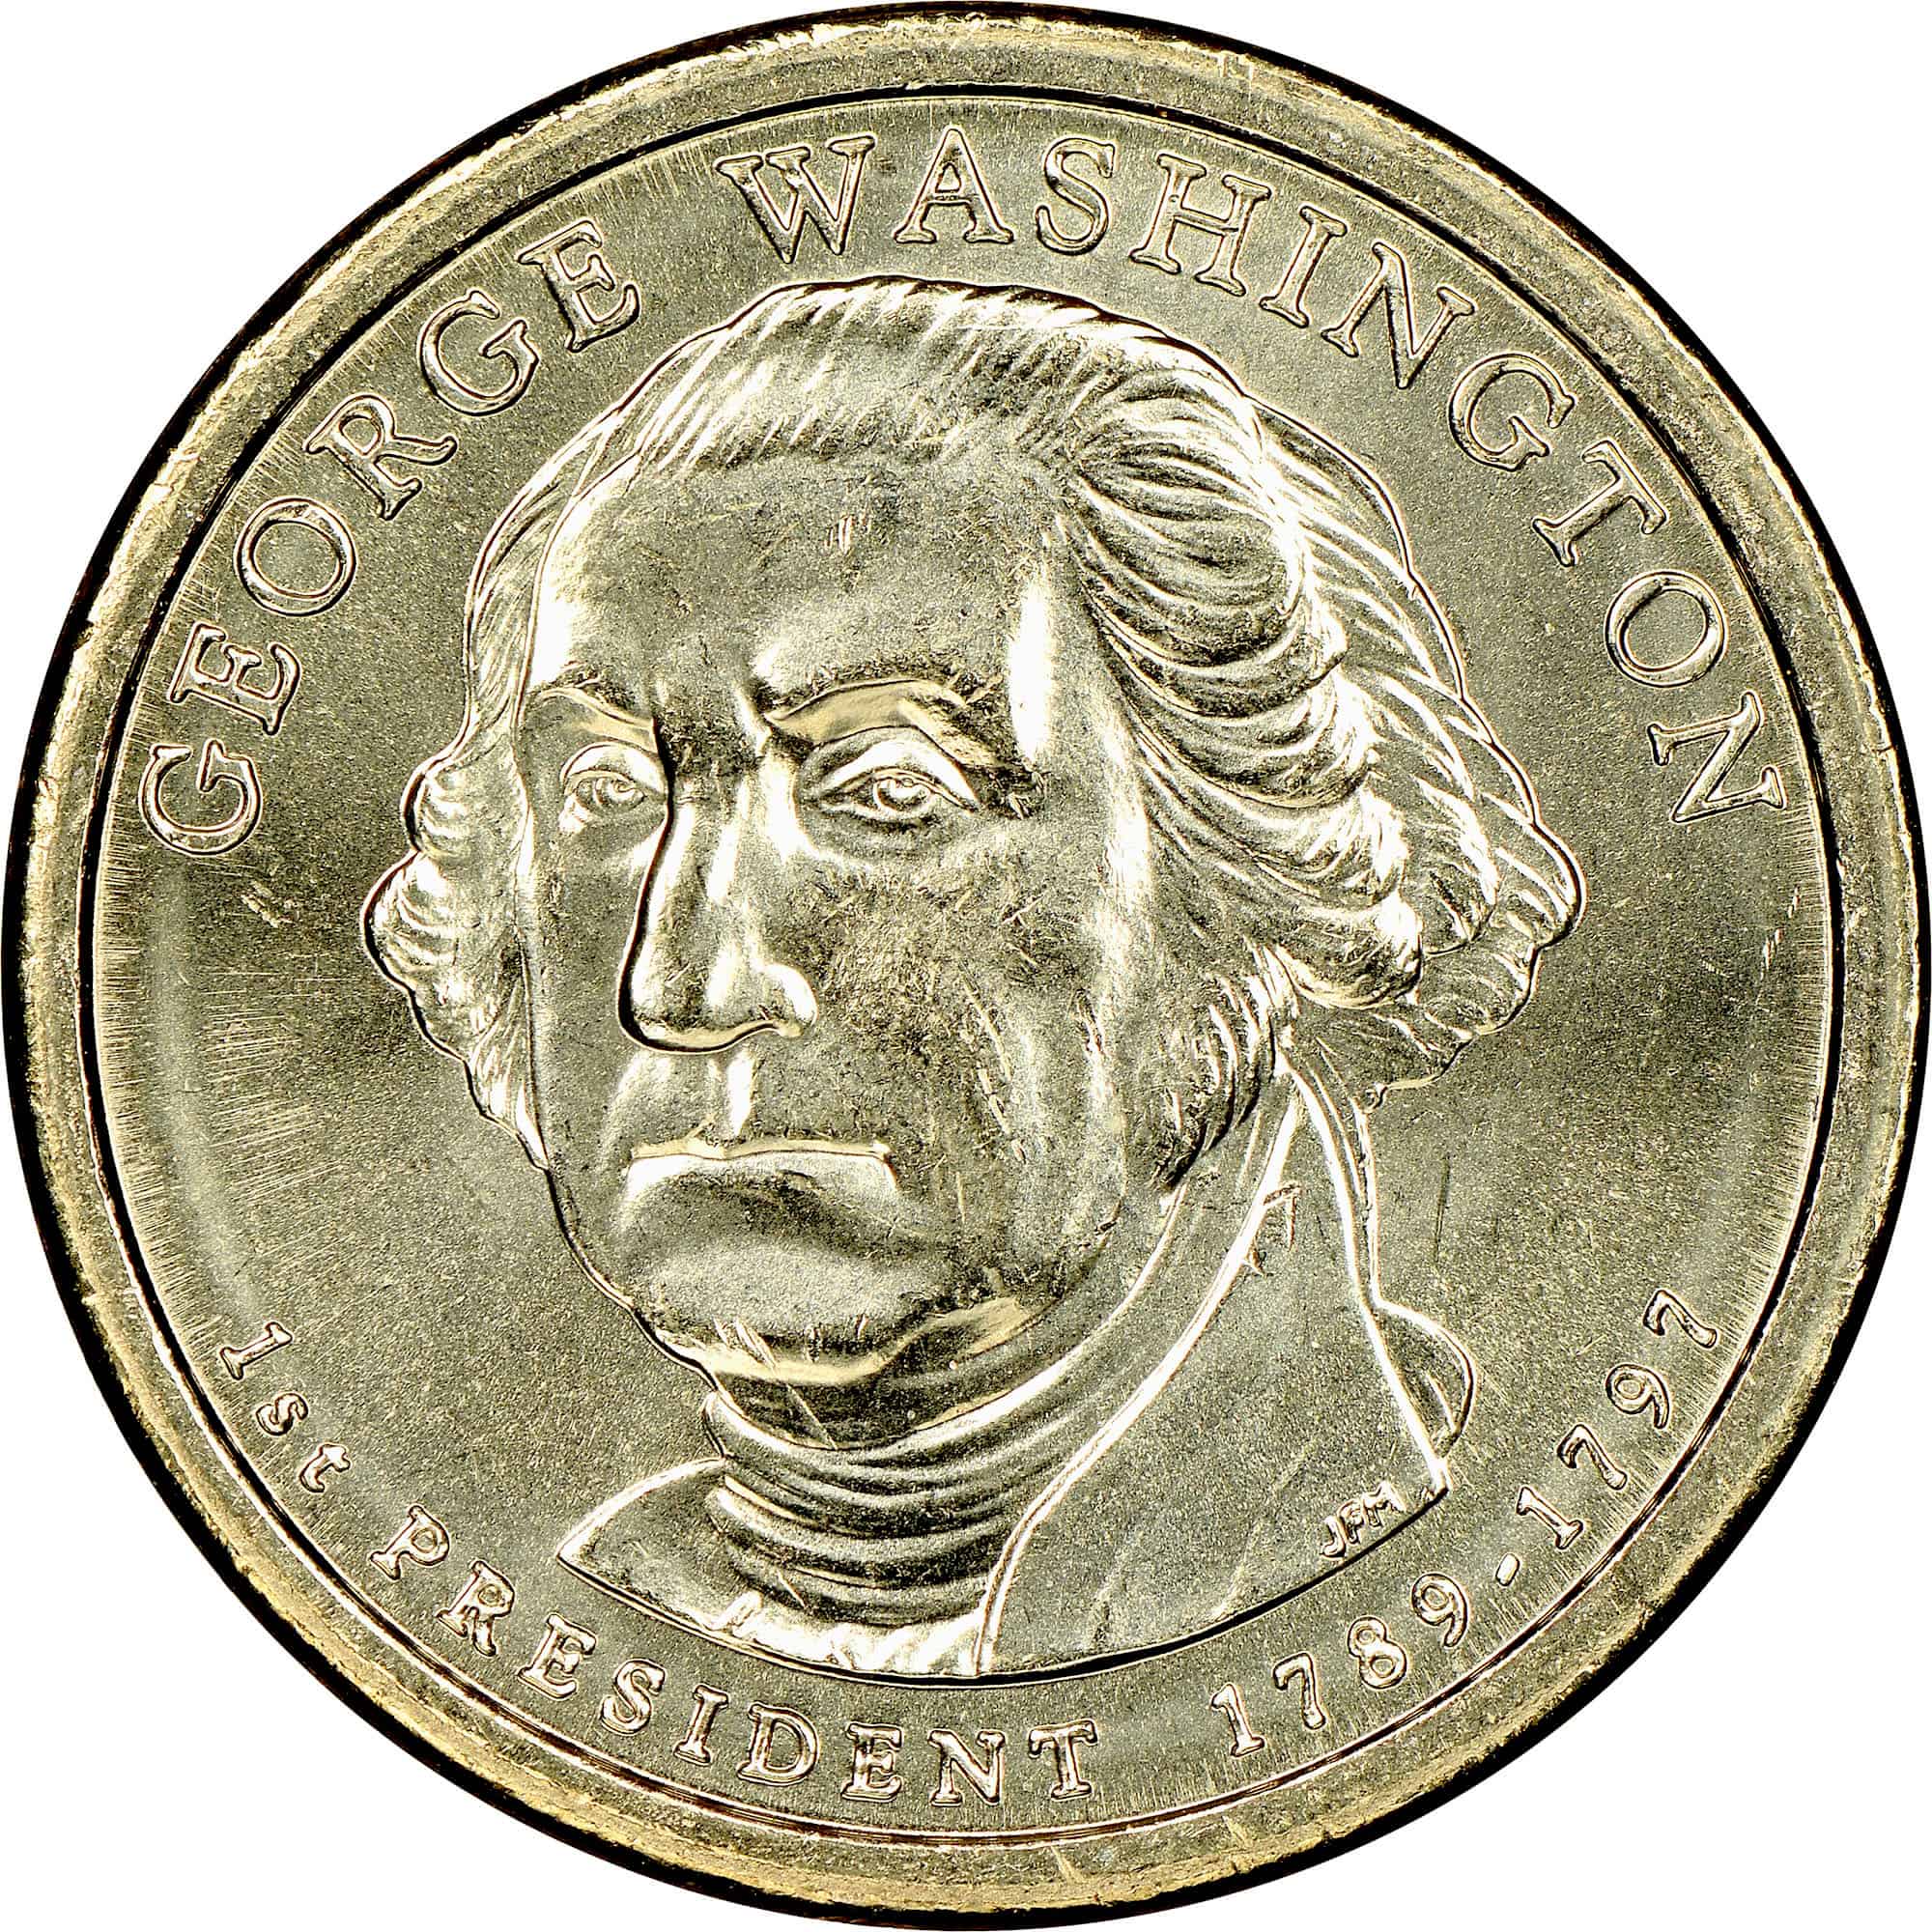 George Washington D Mint Mark Dollar Coin Value